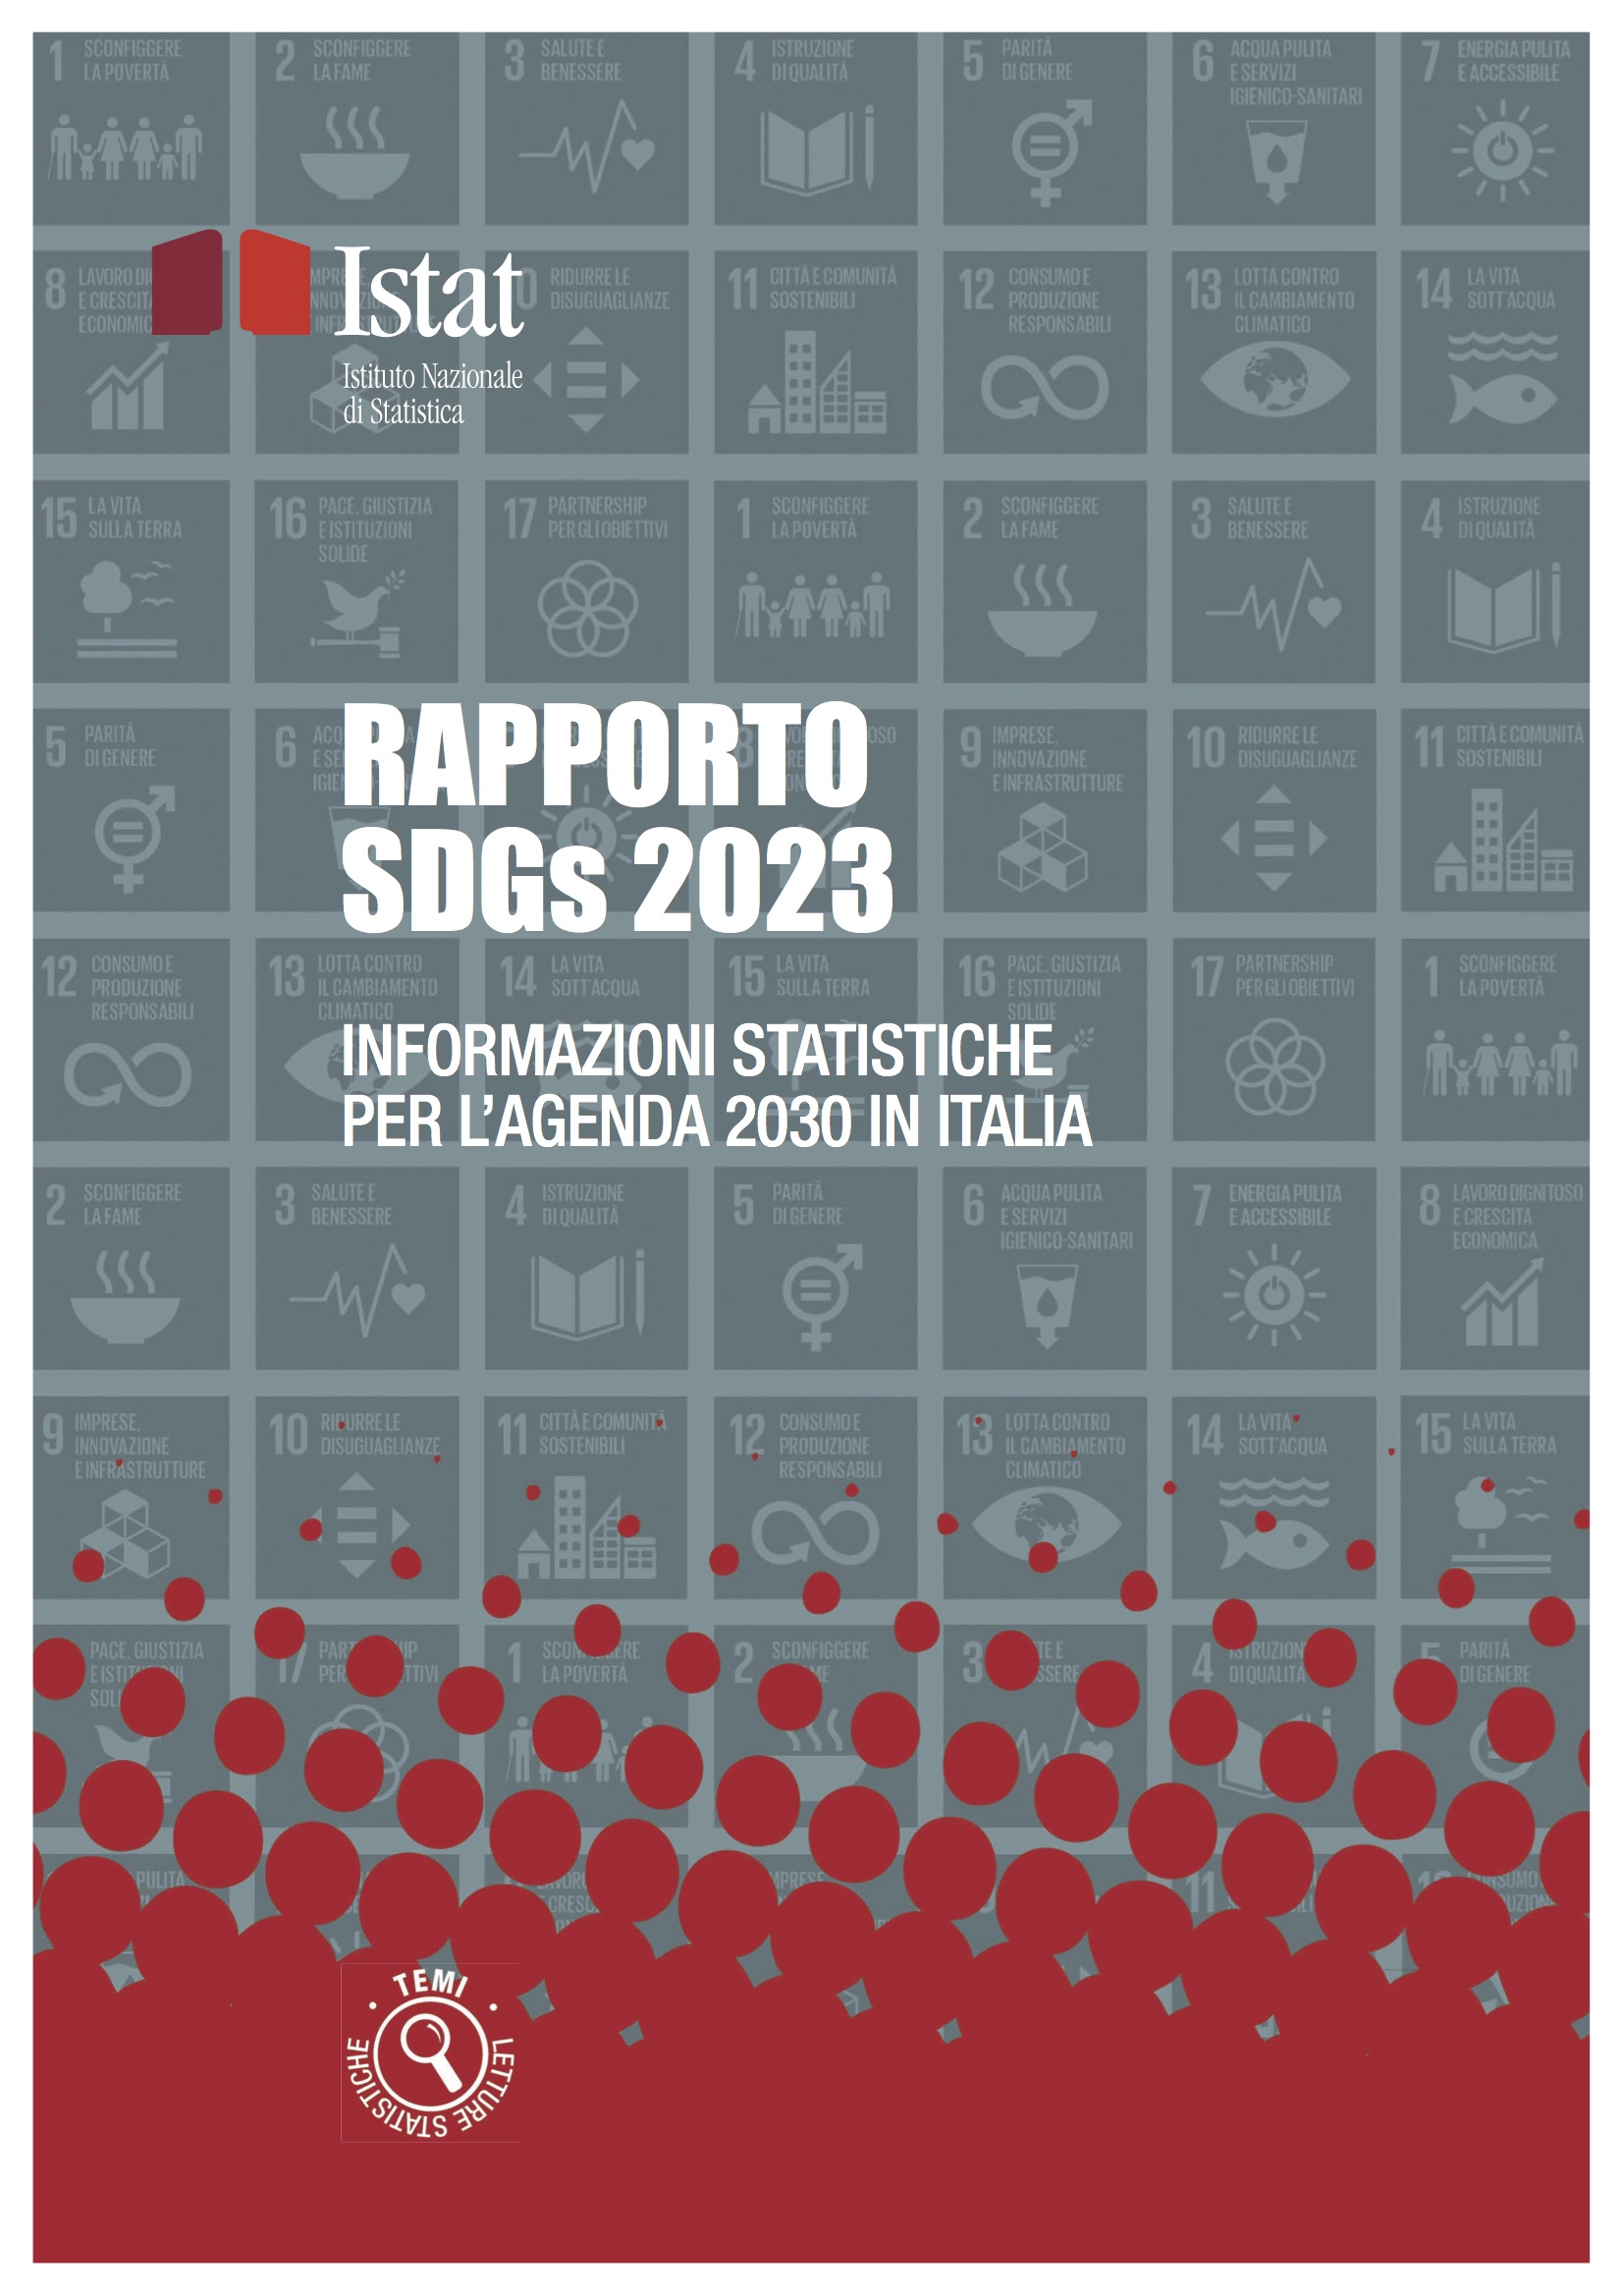 Copertina VI Rapporto Istat SDGs 2030